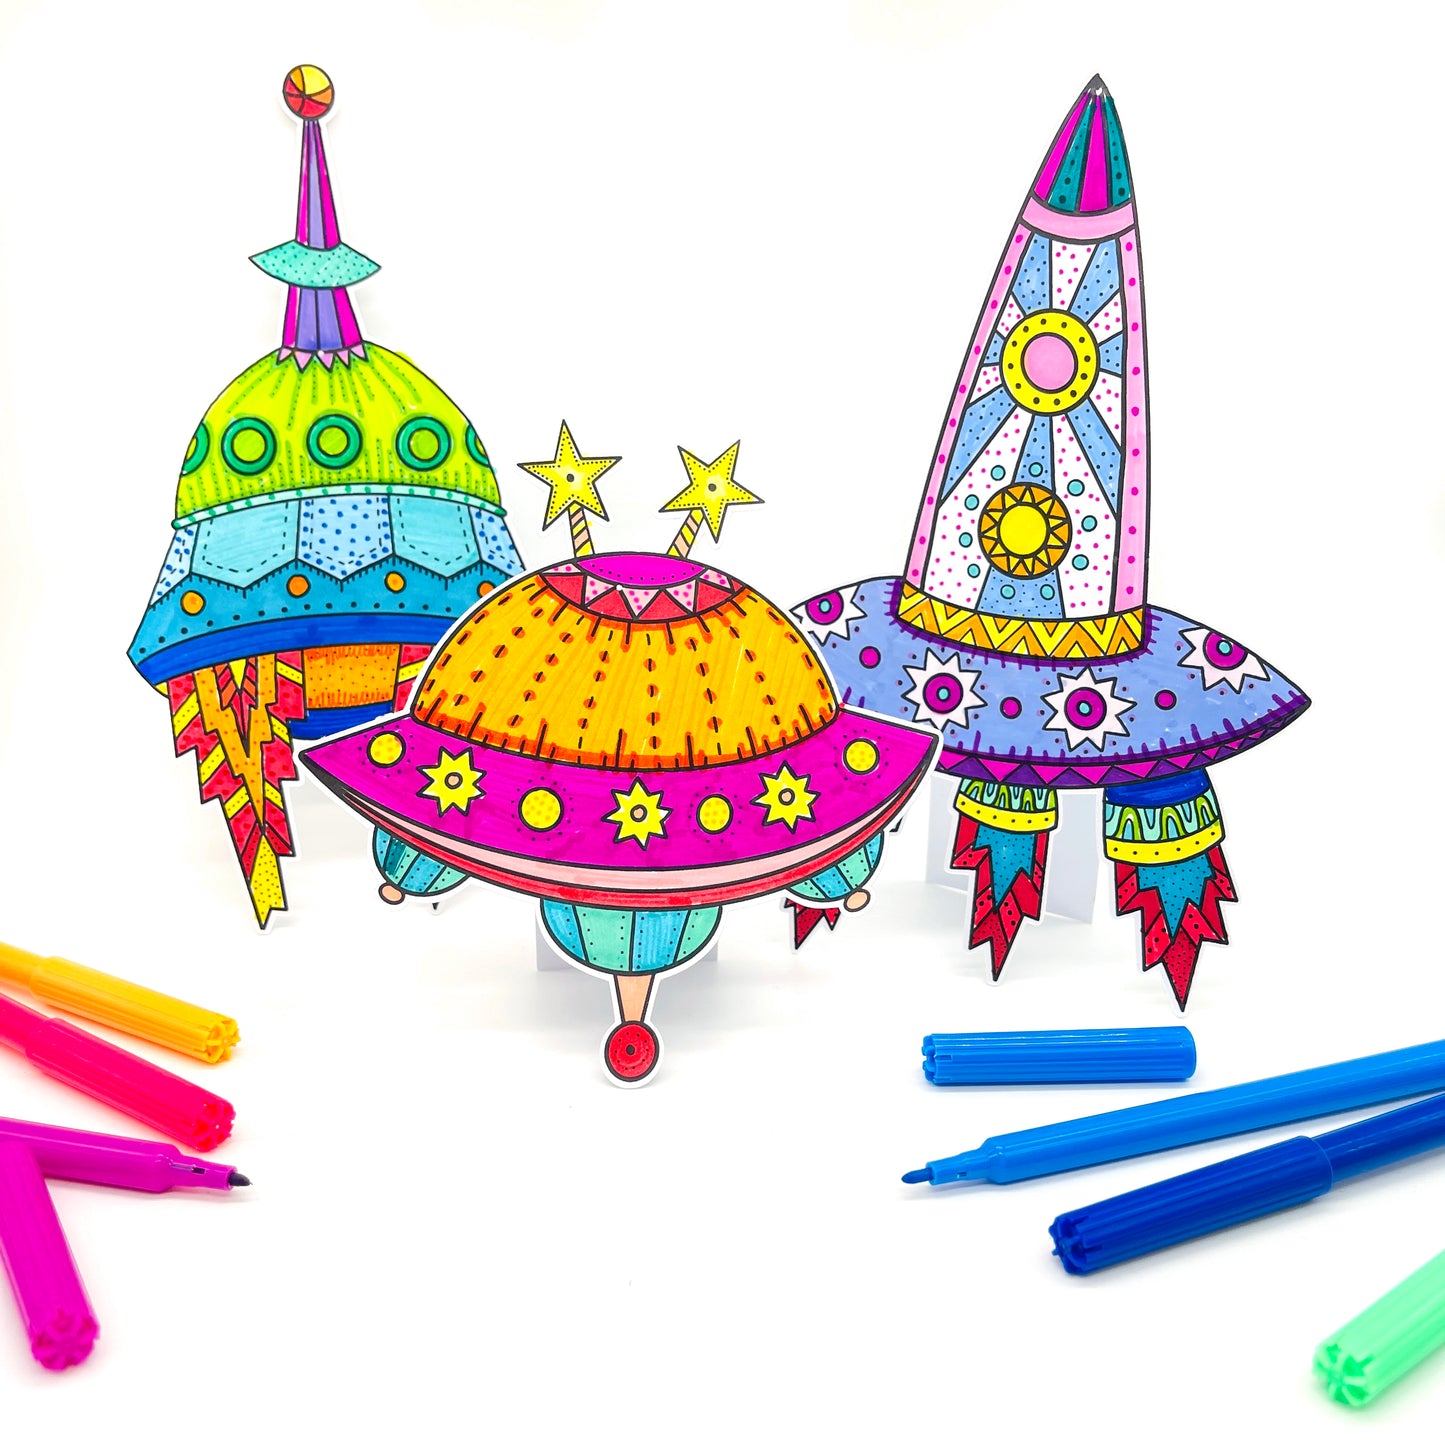 Spaceship colouring kit - Loubiblu